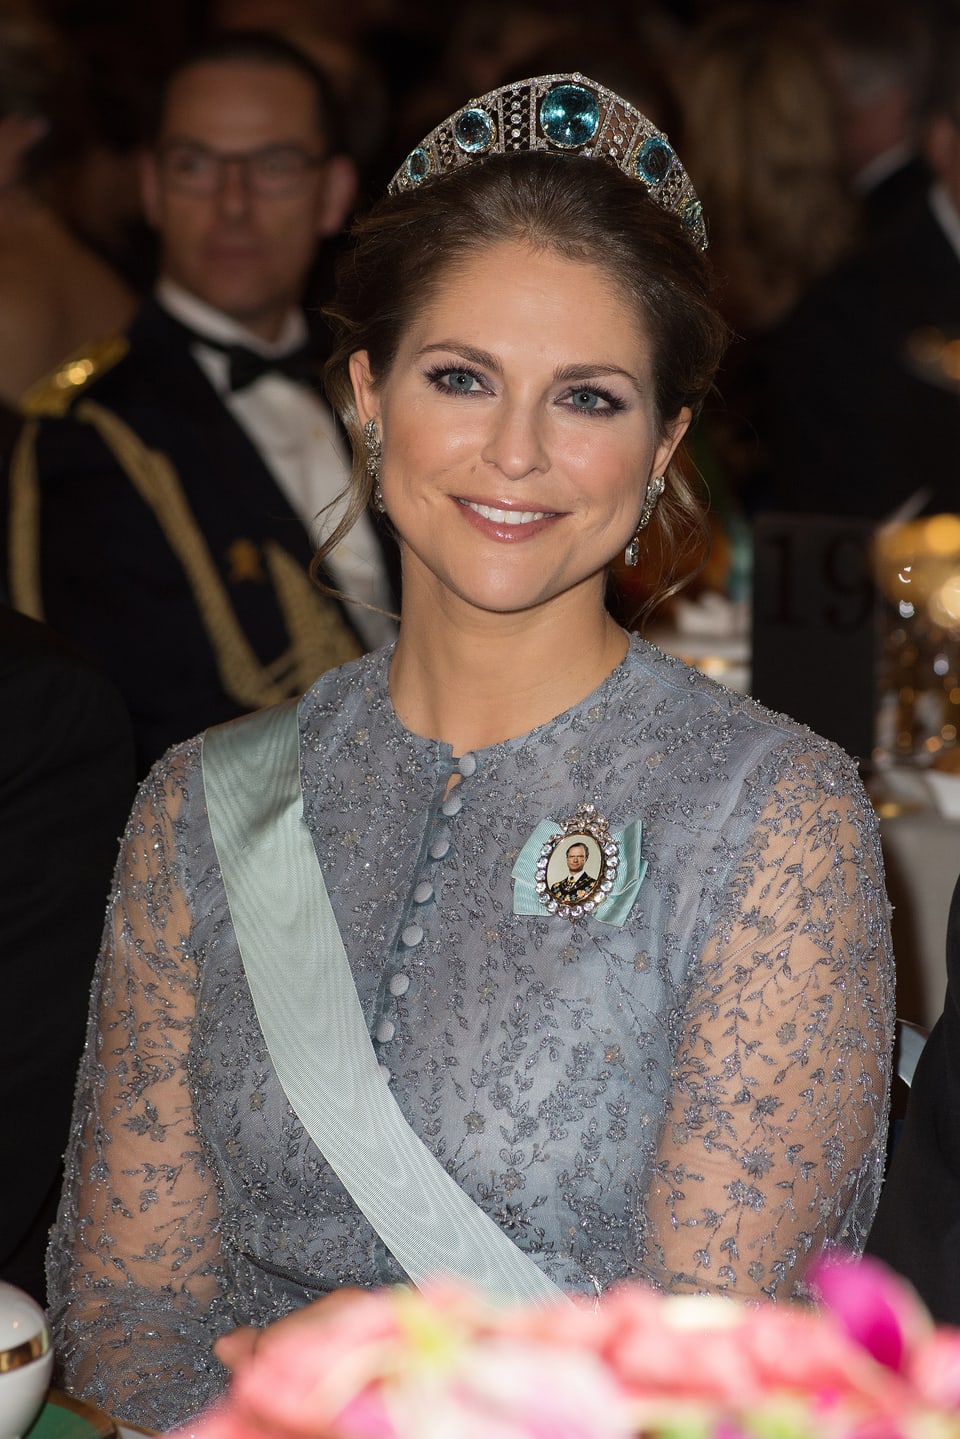 Prinzessin Madeleine mit Krone lächelnd.